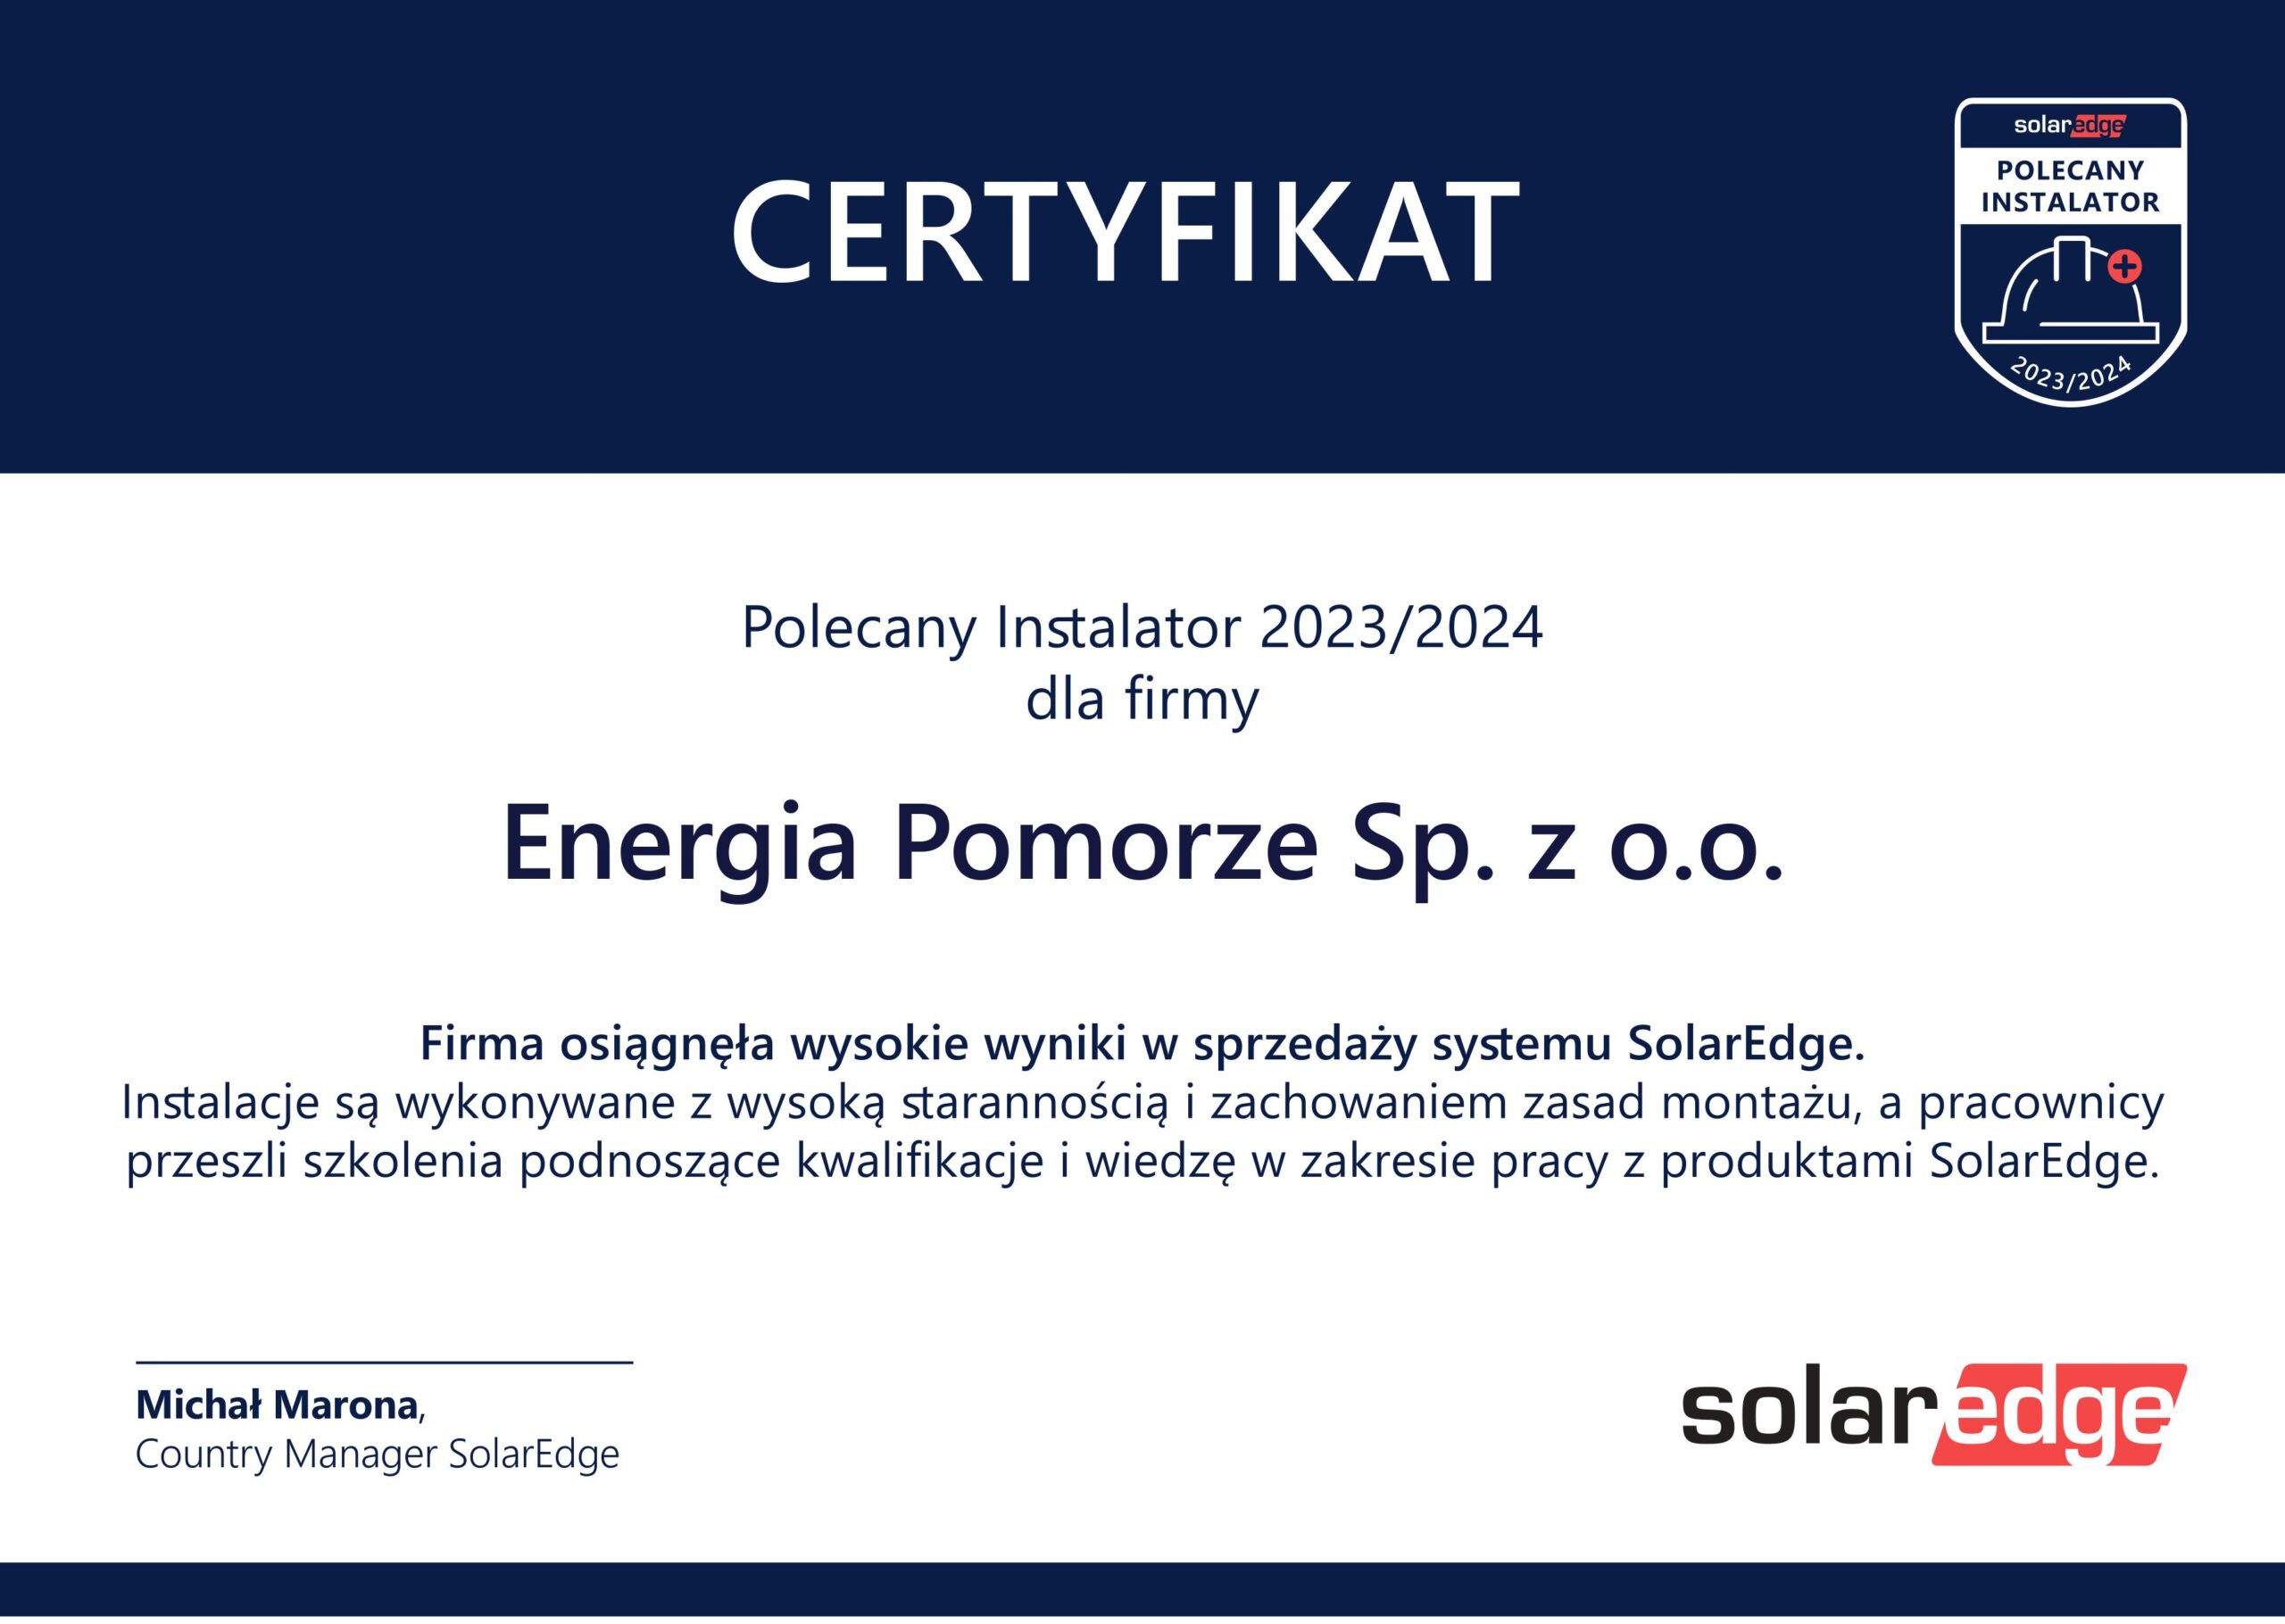 Polecany Instalalator Solaredge